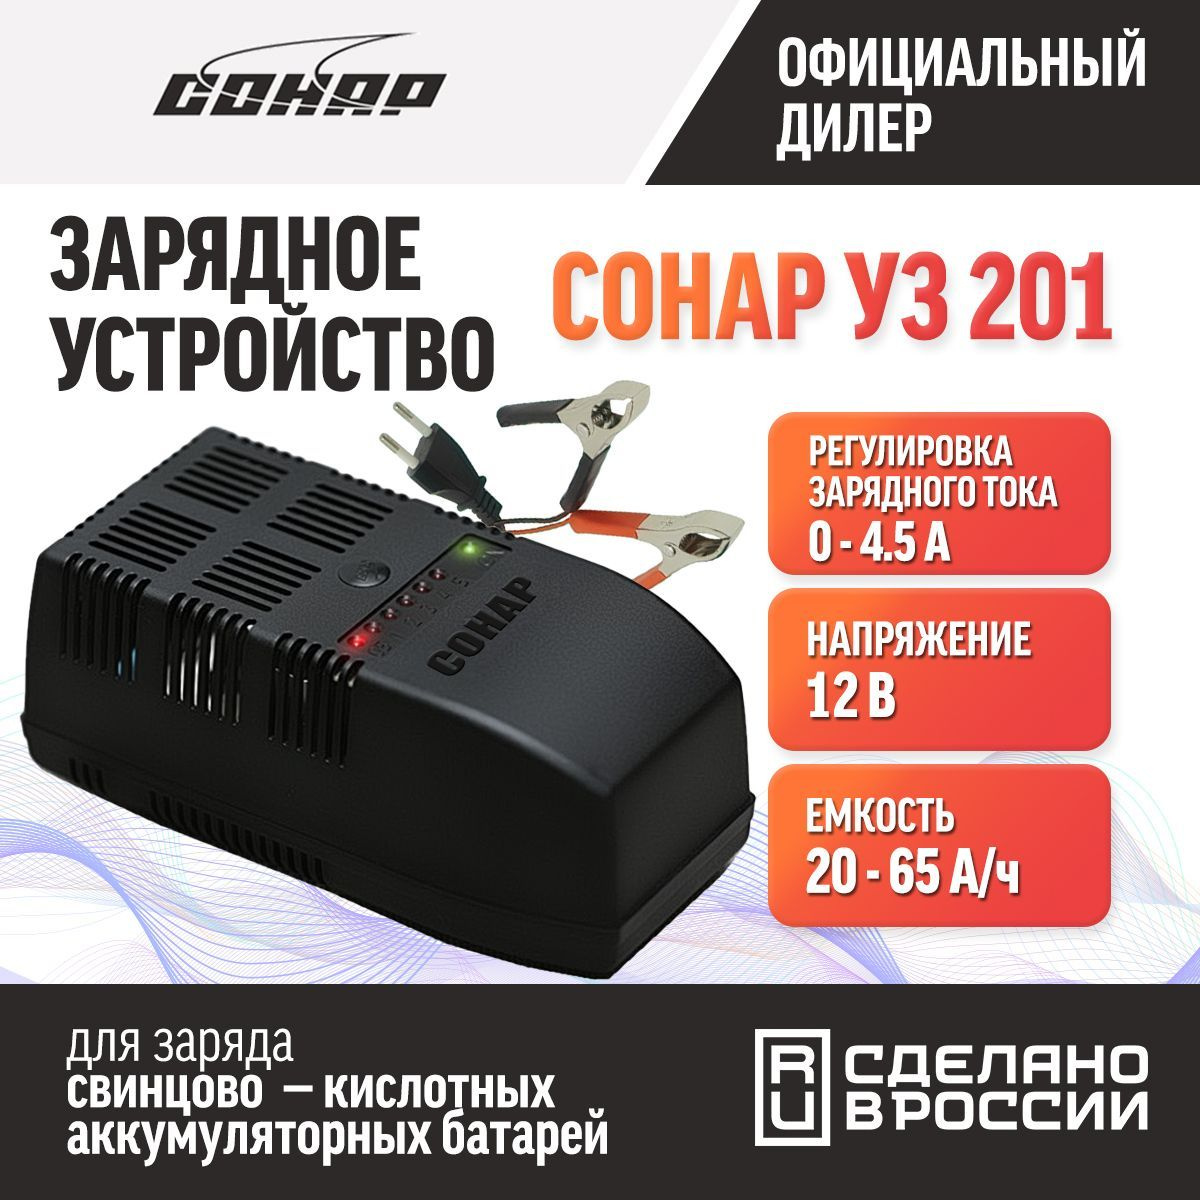 Зарядное устройство для аккумуляторов автомобиля СОНАР УЗ 201 , 12В, автомат , 0-5А, 25-65Ач